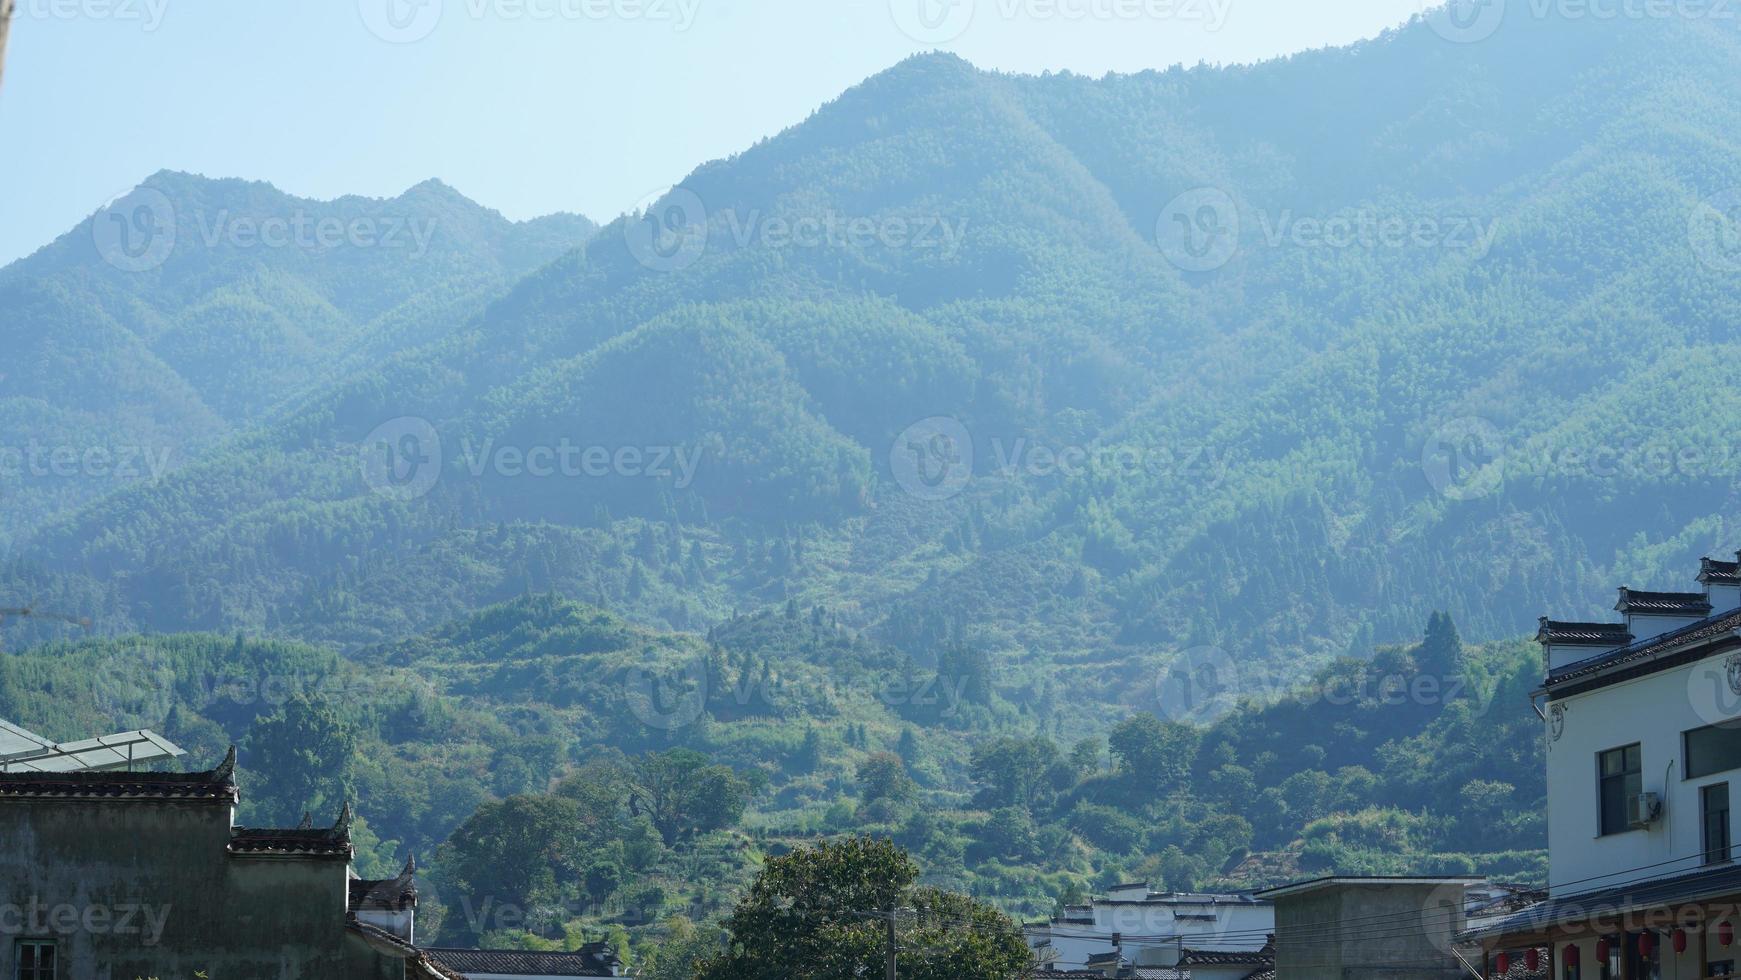 de mooi traditioneel Chinese dorp visie met de klassiek architectuur en vers groen bomen net zo achtergrond foto